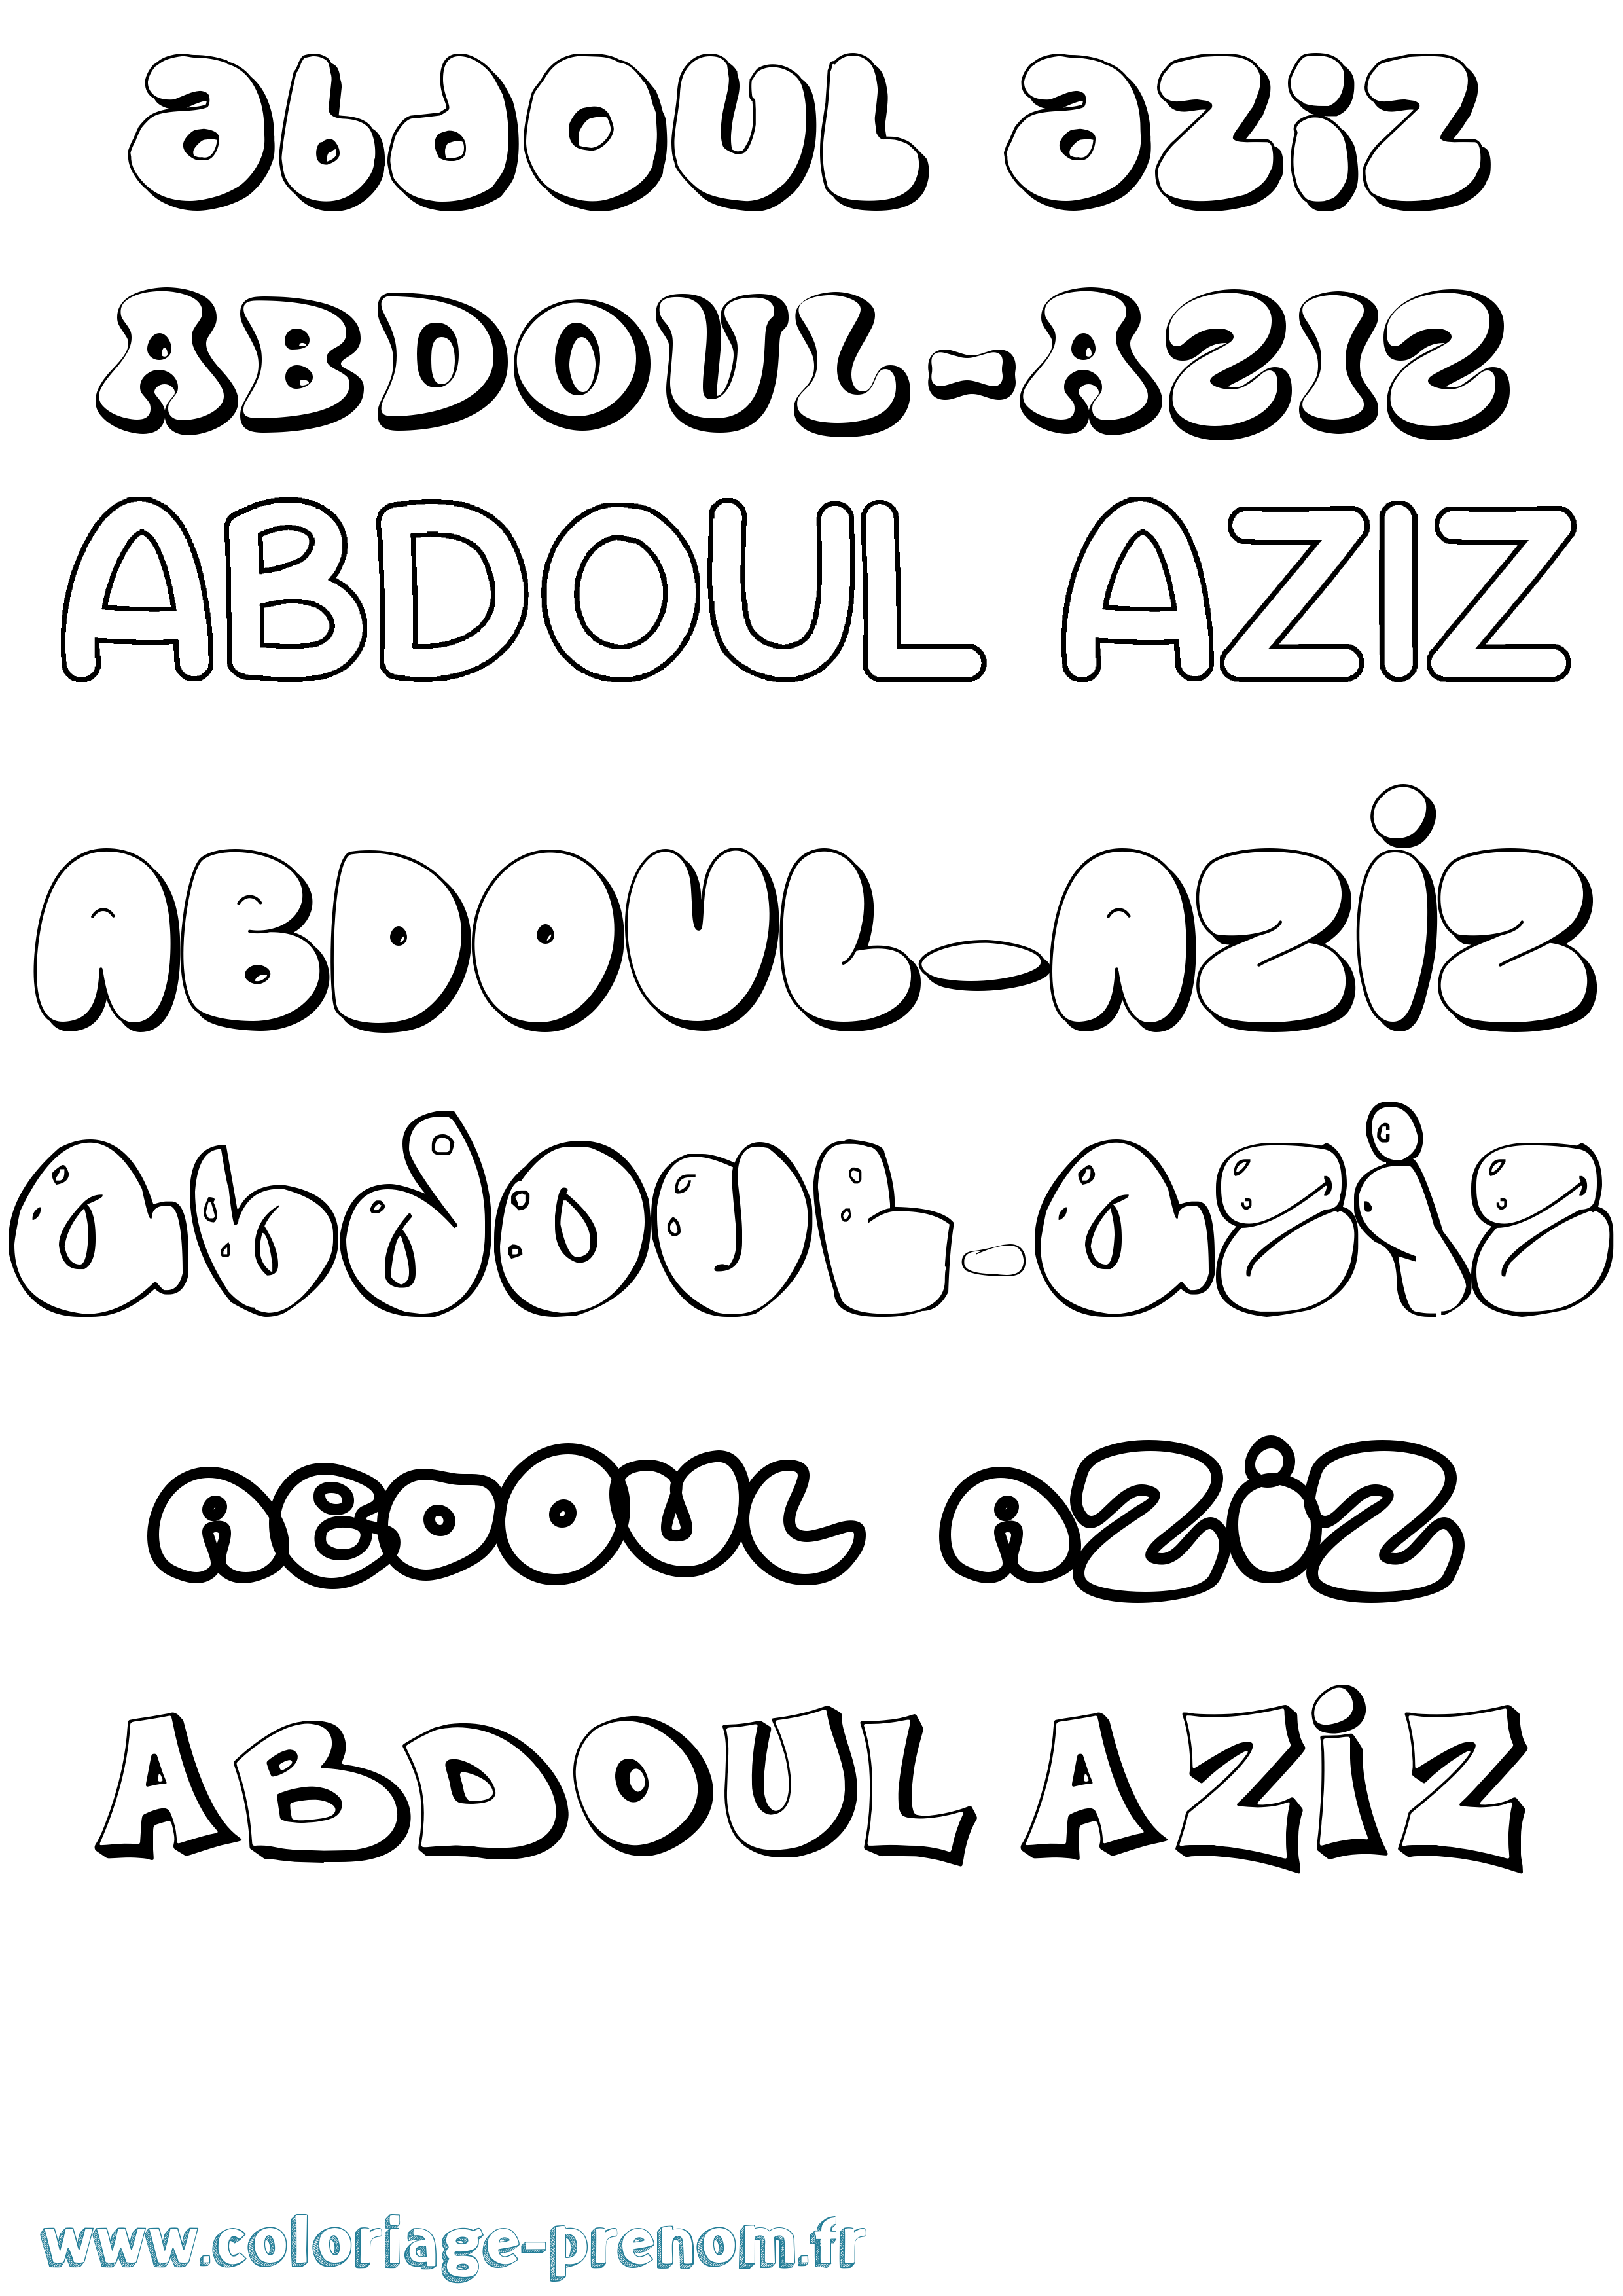 Coloriage prénom Abdoul-Aziz Bubble